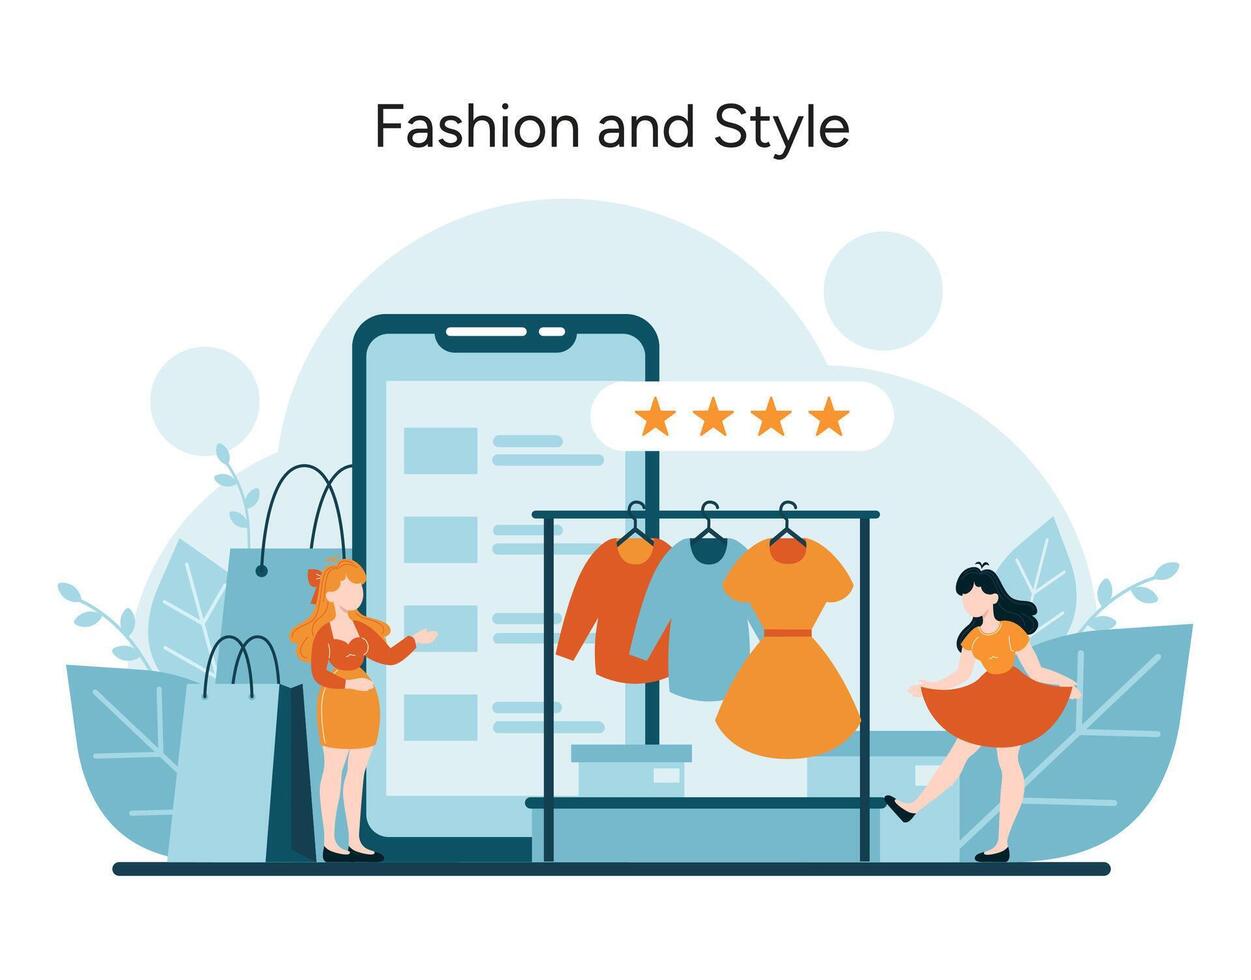 Käufer verwenden ein Smartphone App zu Bewertung Outfits, verkörpern das modern Zusammenspiel von Mode, Technologie, und Verbraucher Wahl vektor